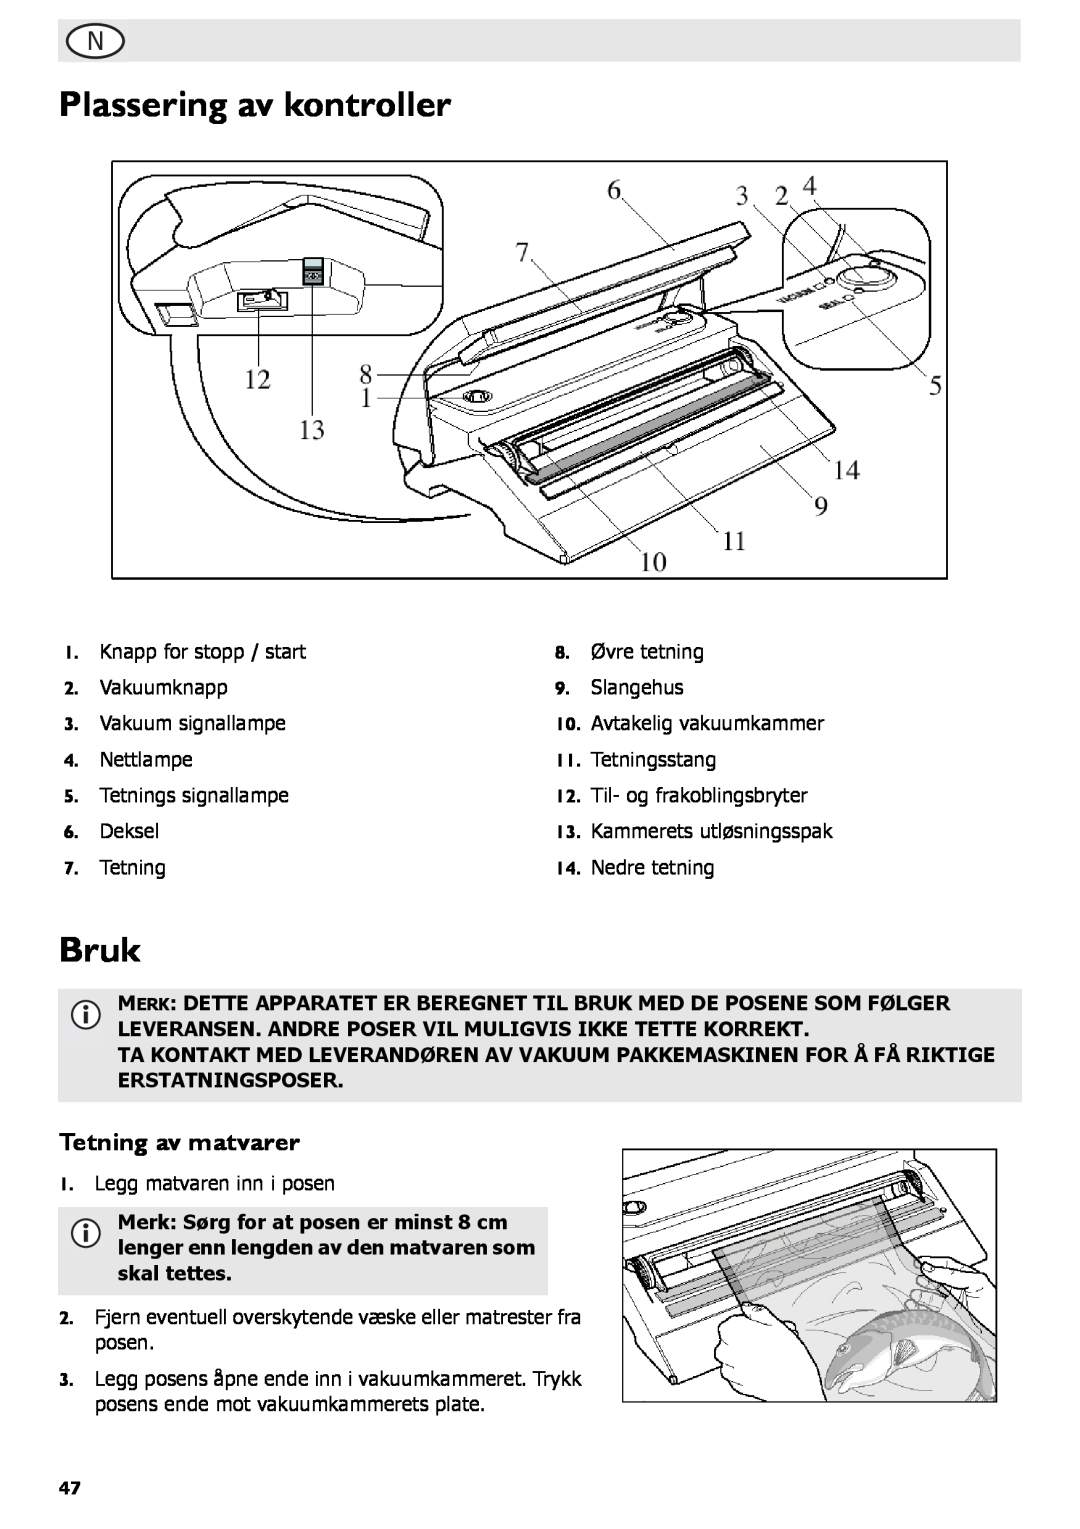 Buffalo Tools S097 instruction manual Plassering av kontroller, Bruk, Tetning av matvarer 